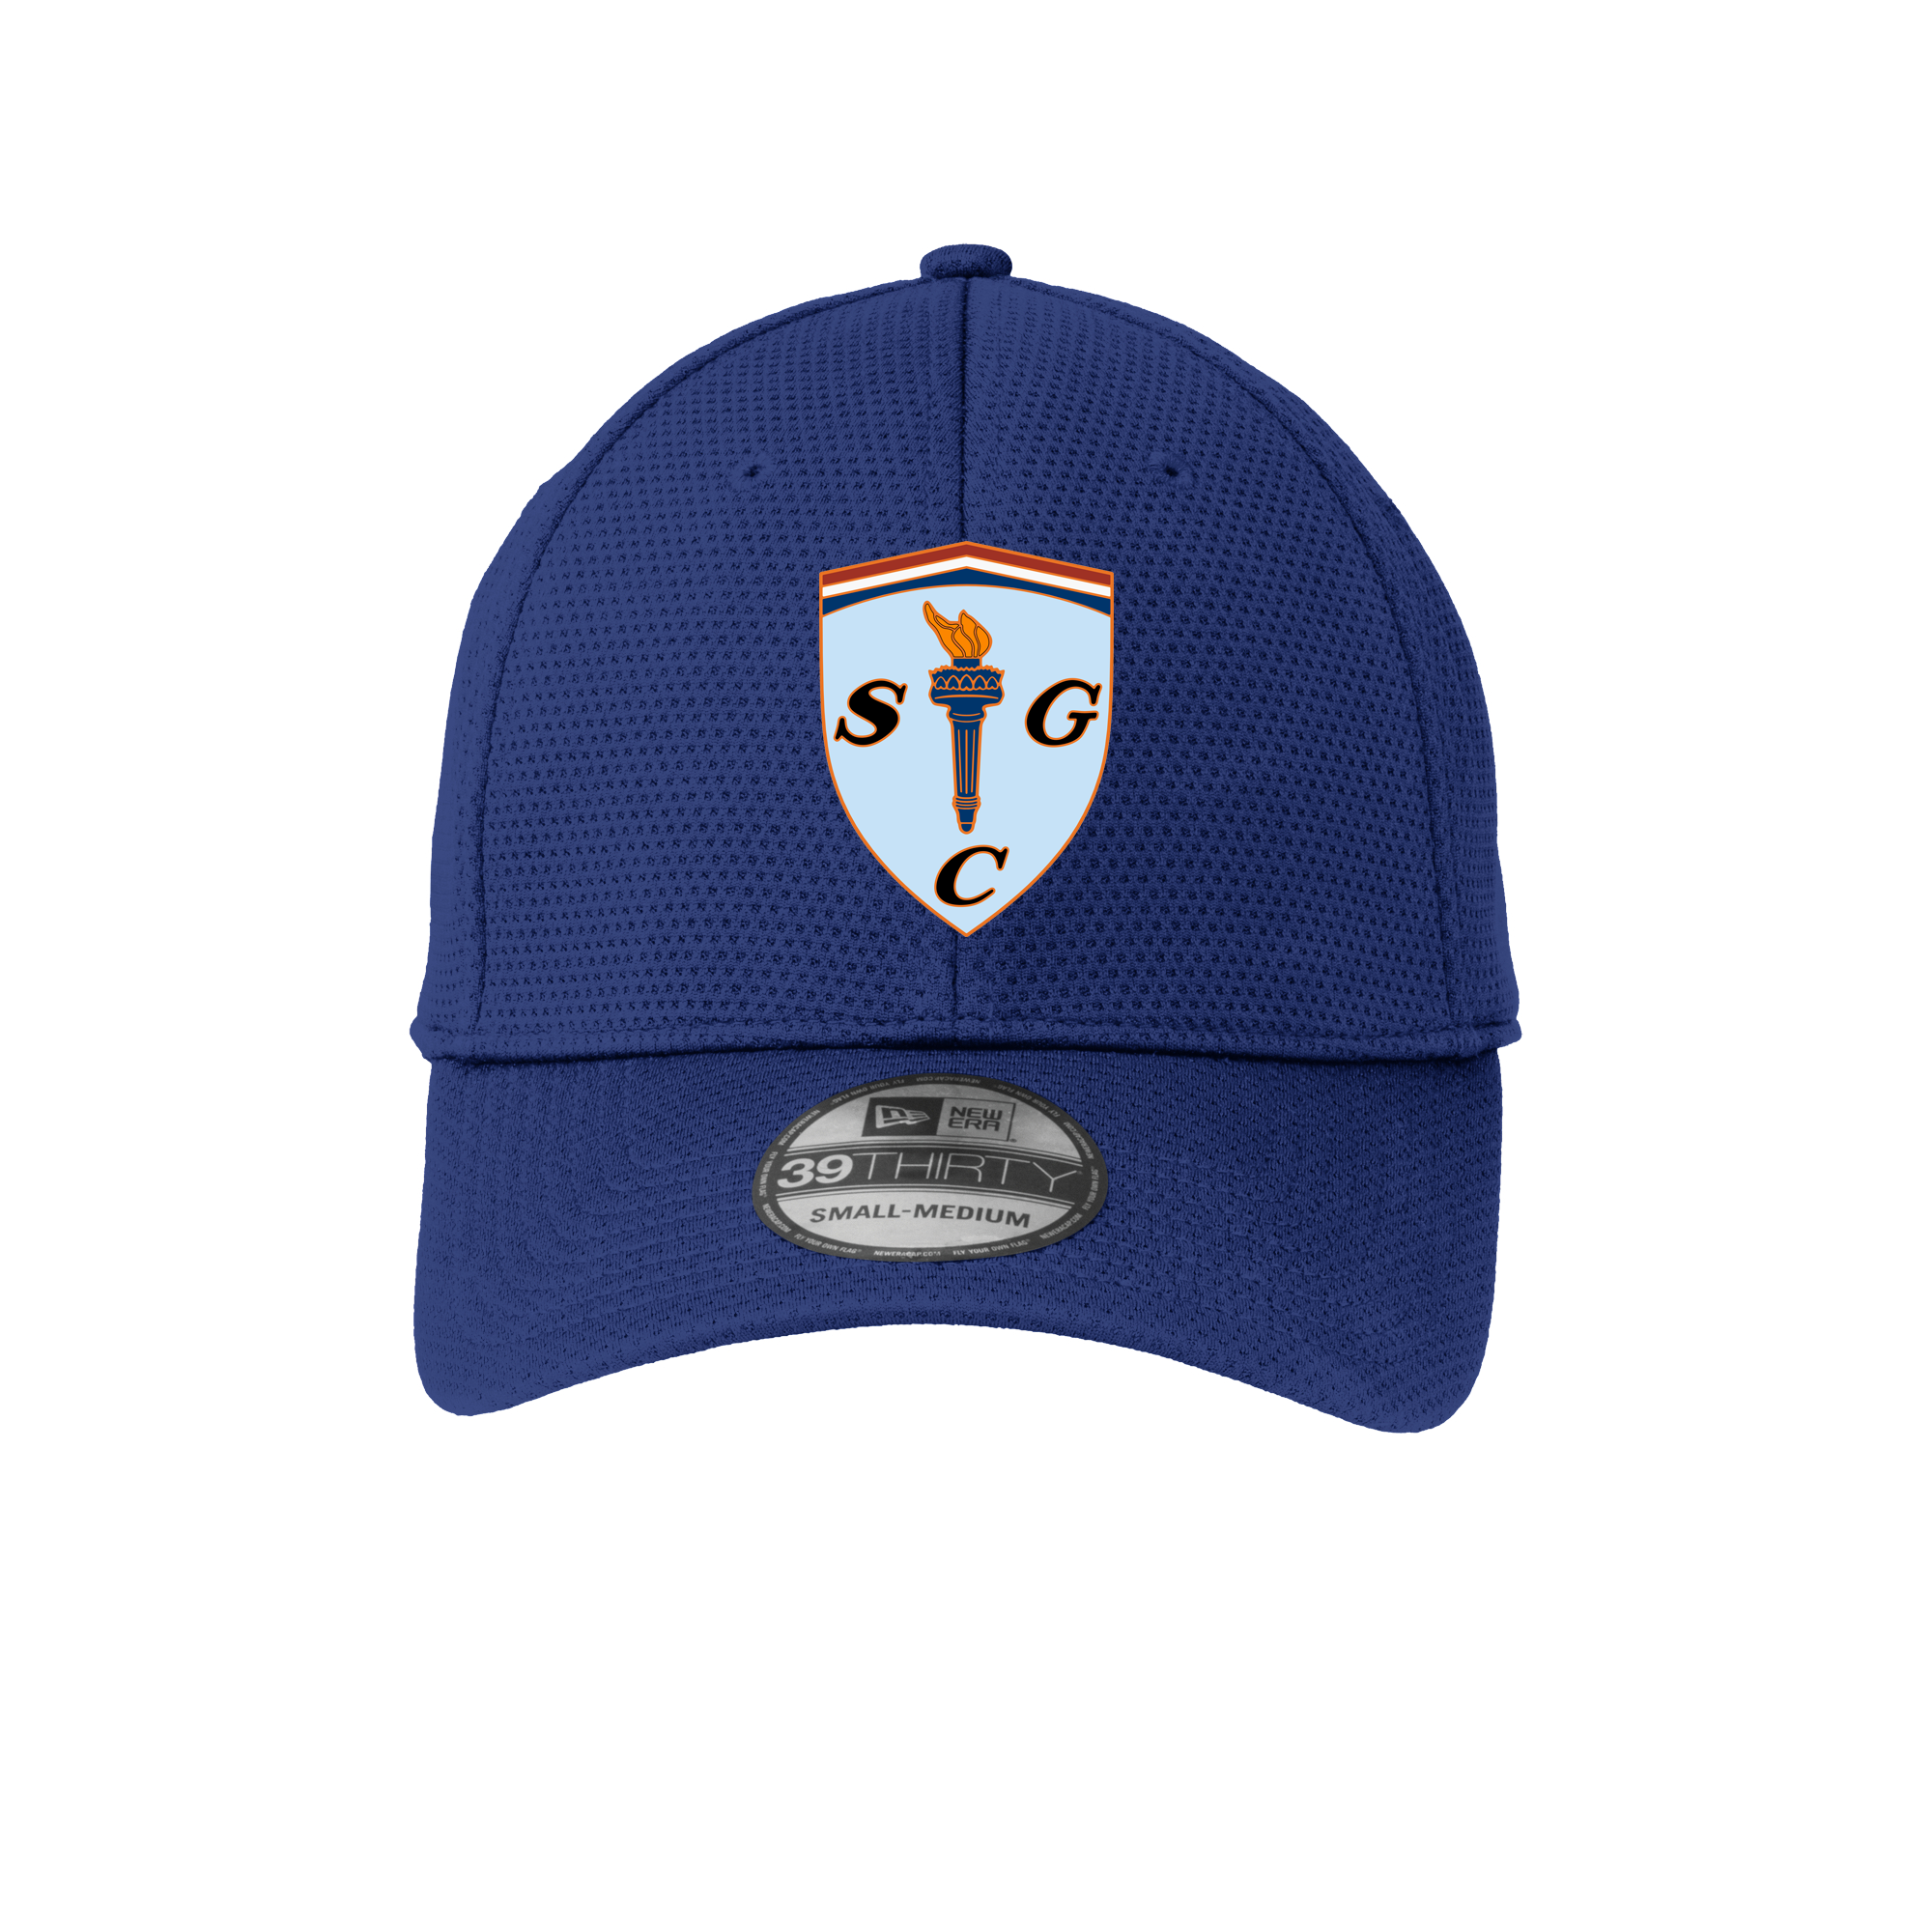 Team Hat with The Shield (Blue) – Scuderia Cameron Glickenhaus